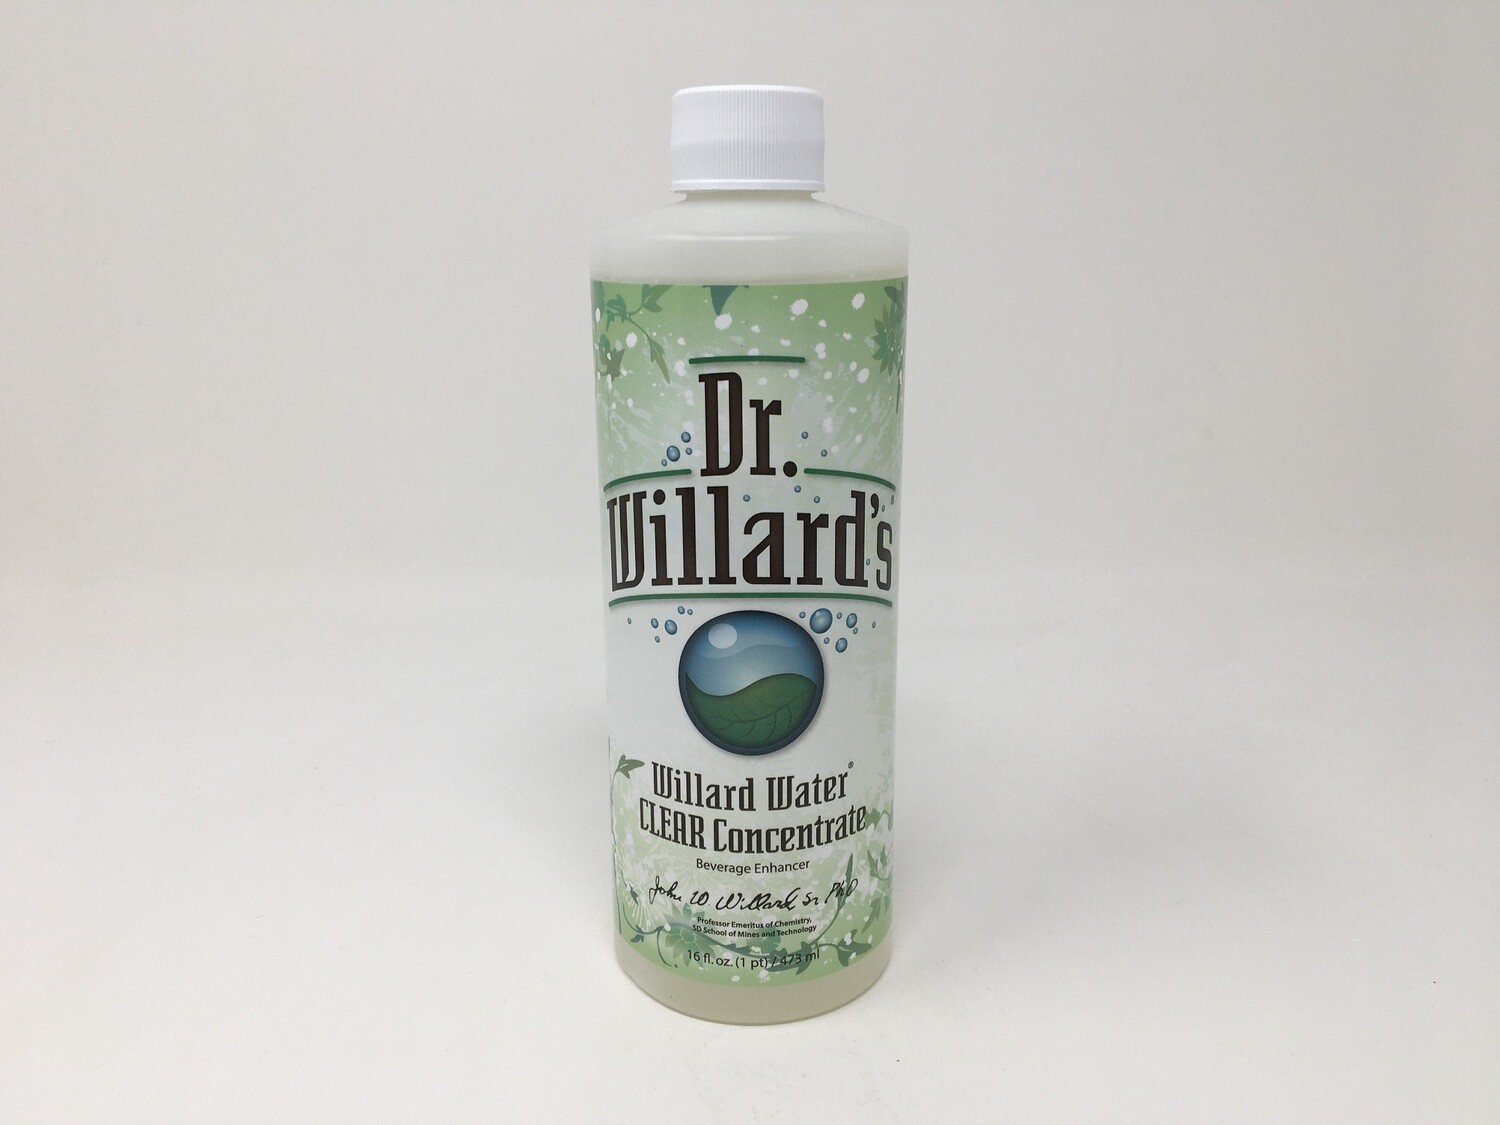 Willard Water16oz (Dr Willards)